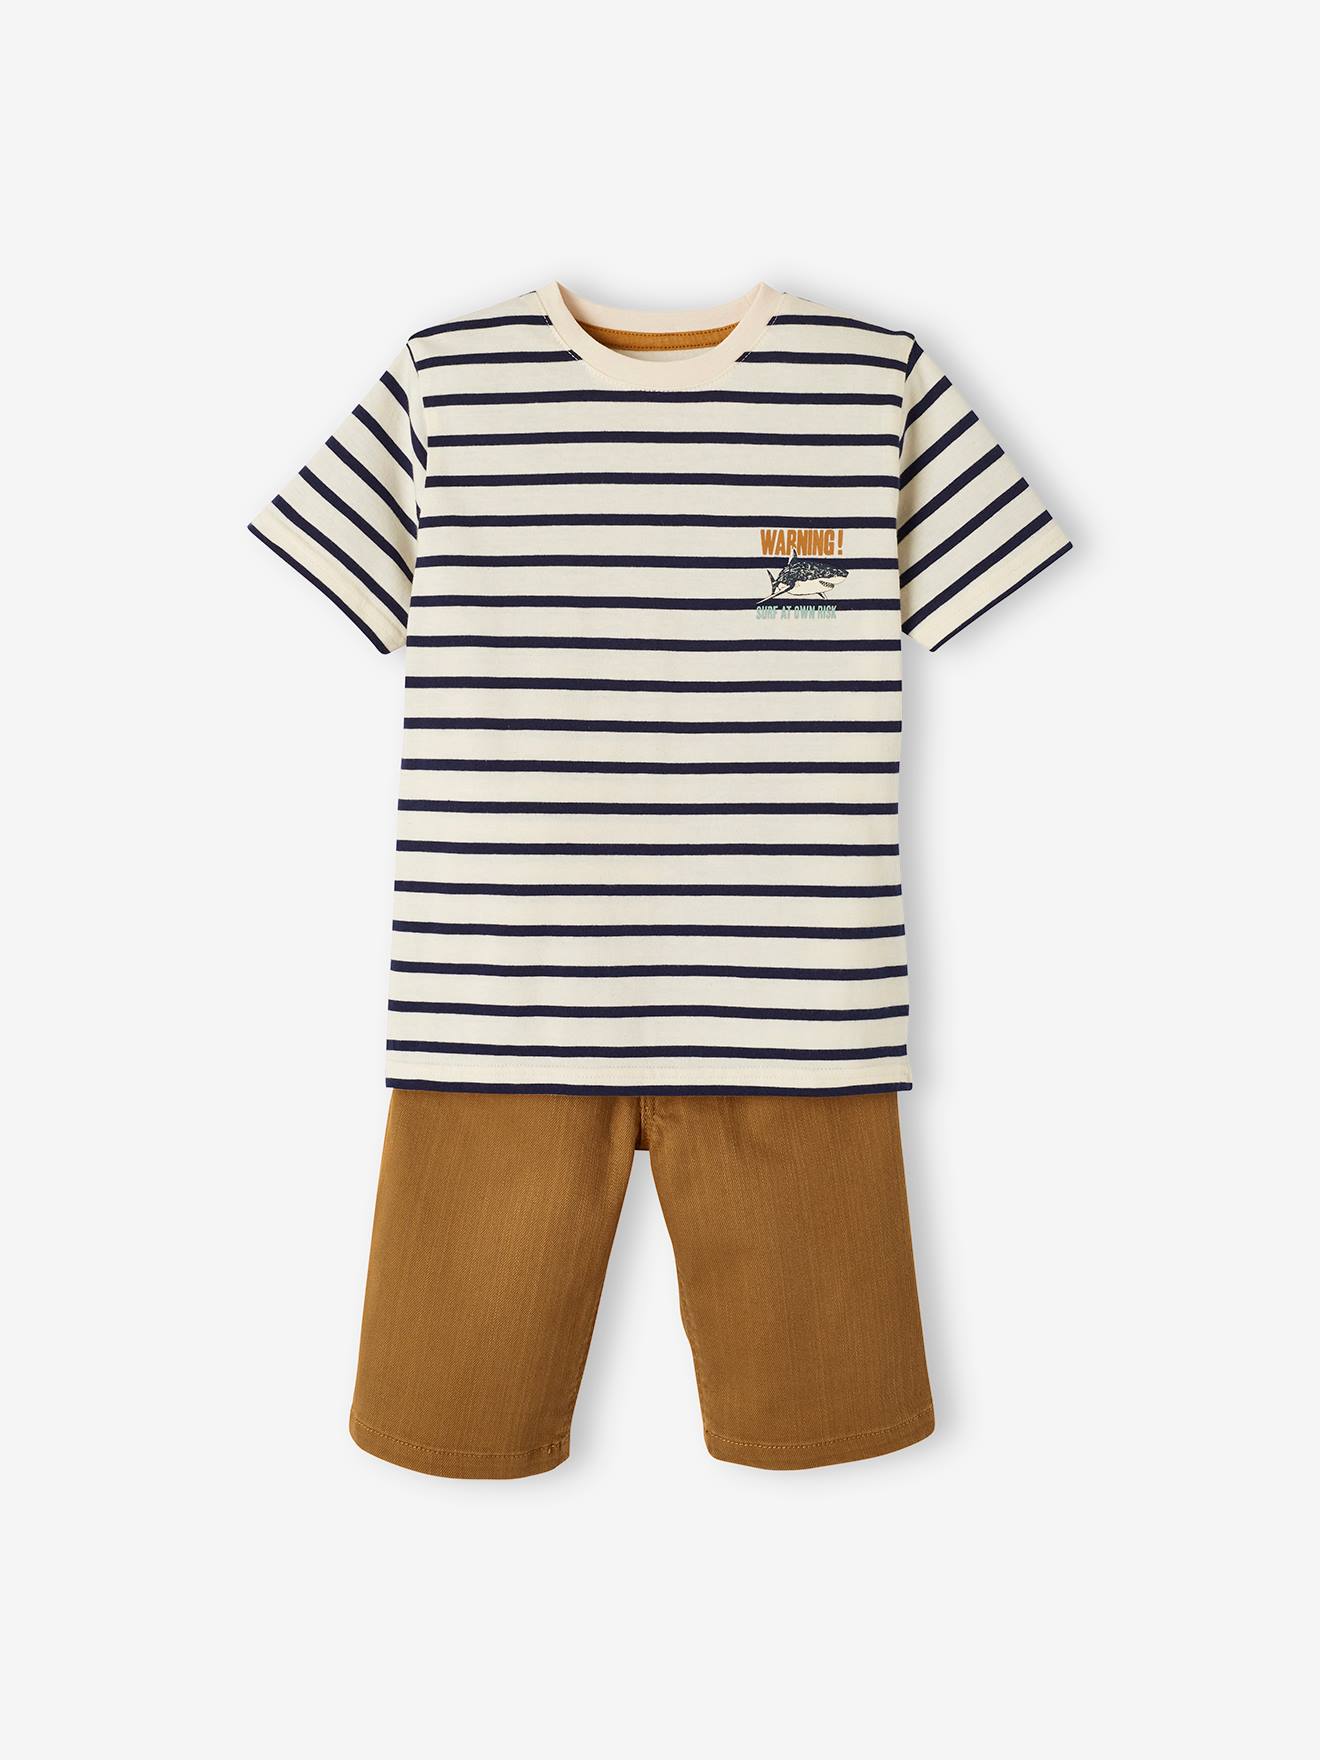 Jongensset met gestreept T-shirt en bermuda van canvas bruin